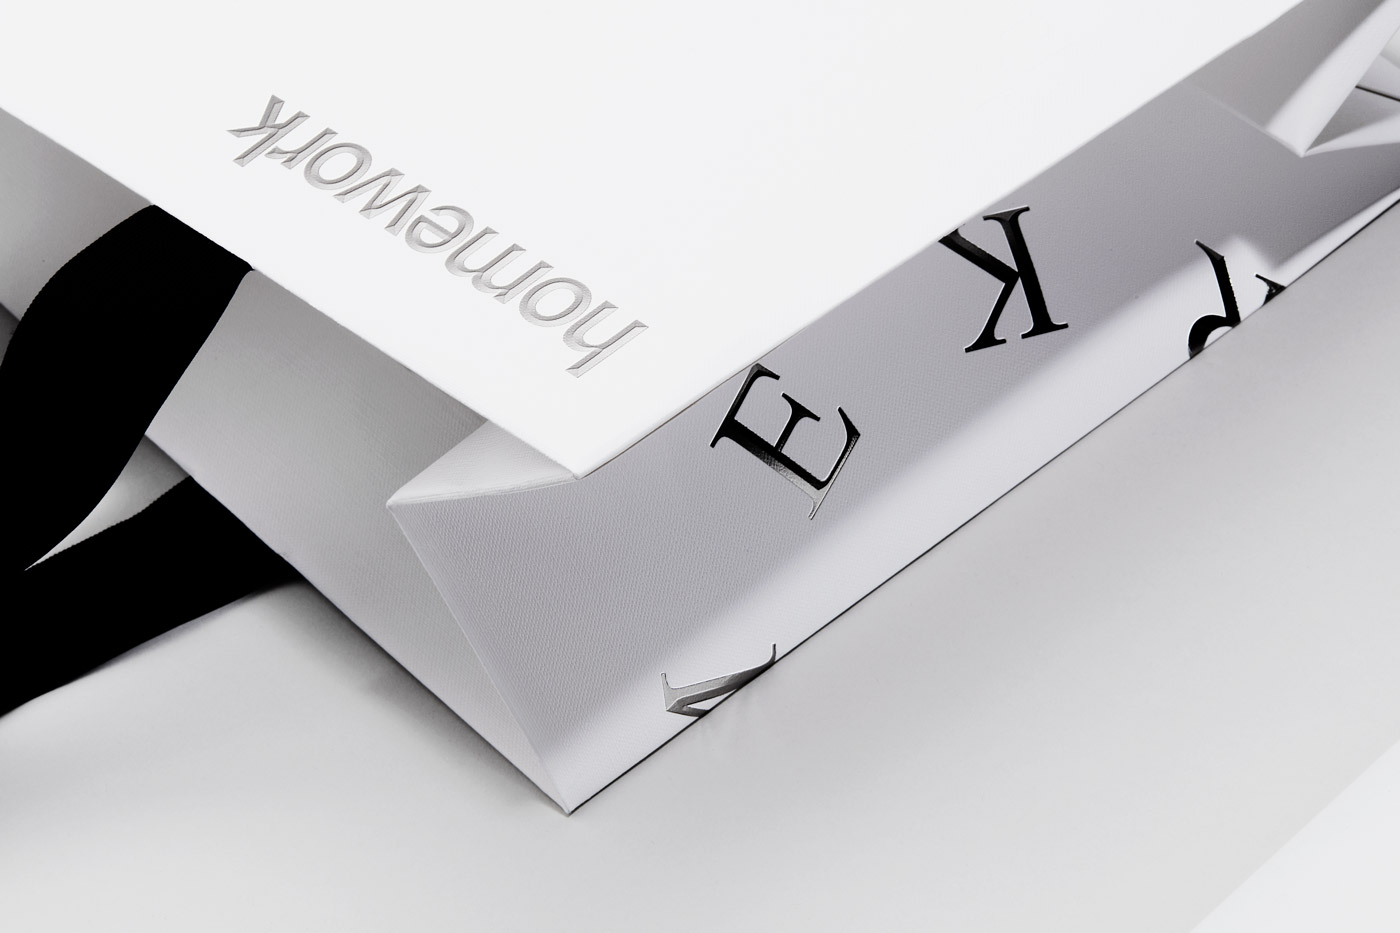 Homework – Packaging